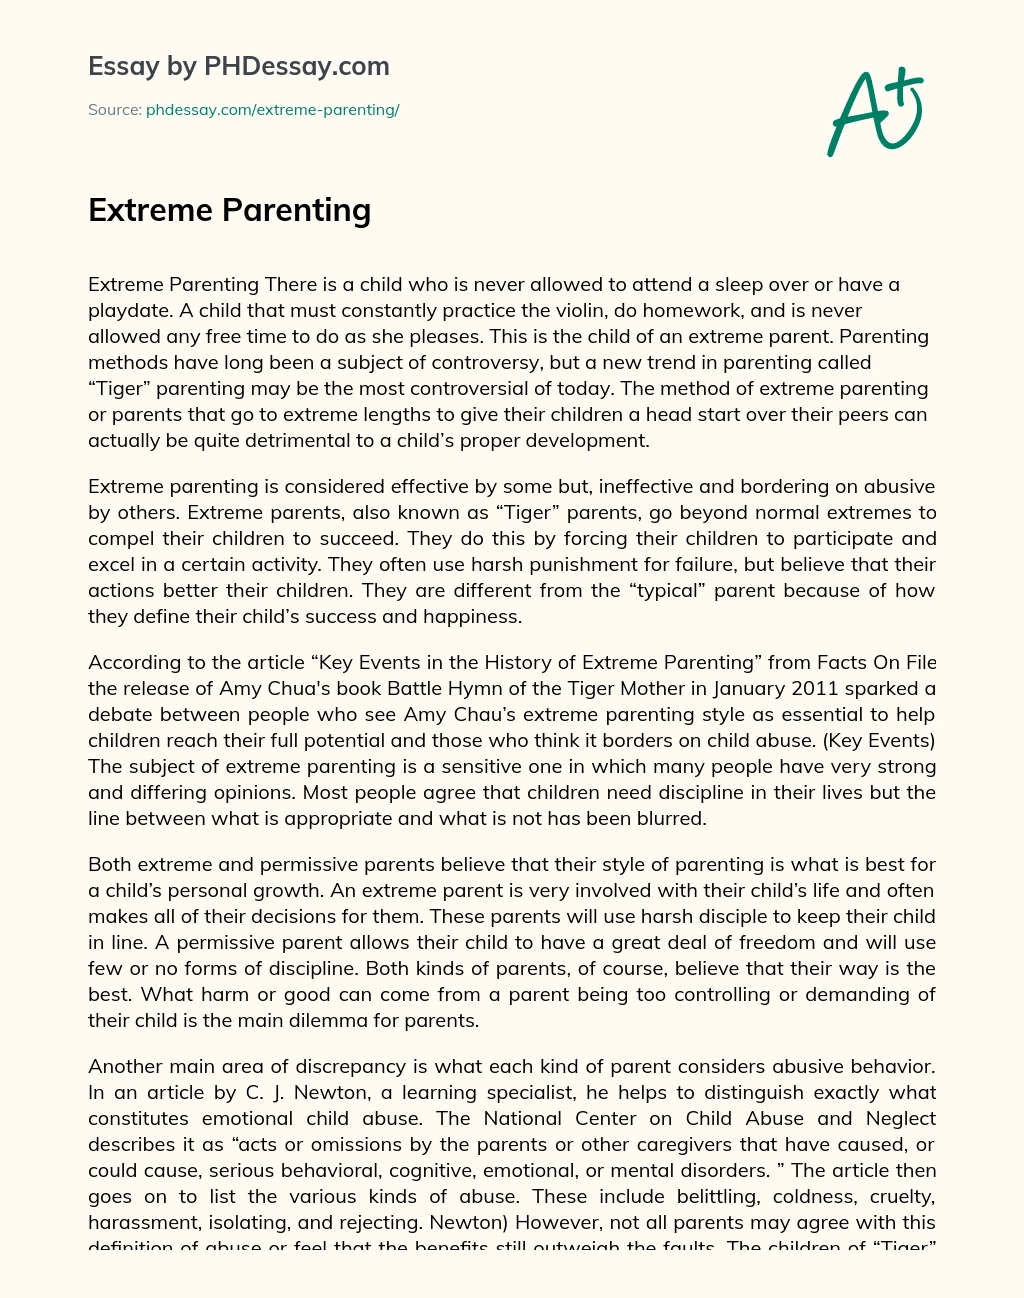 Extreme Parenting essay